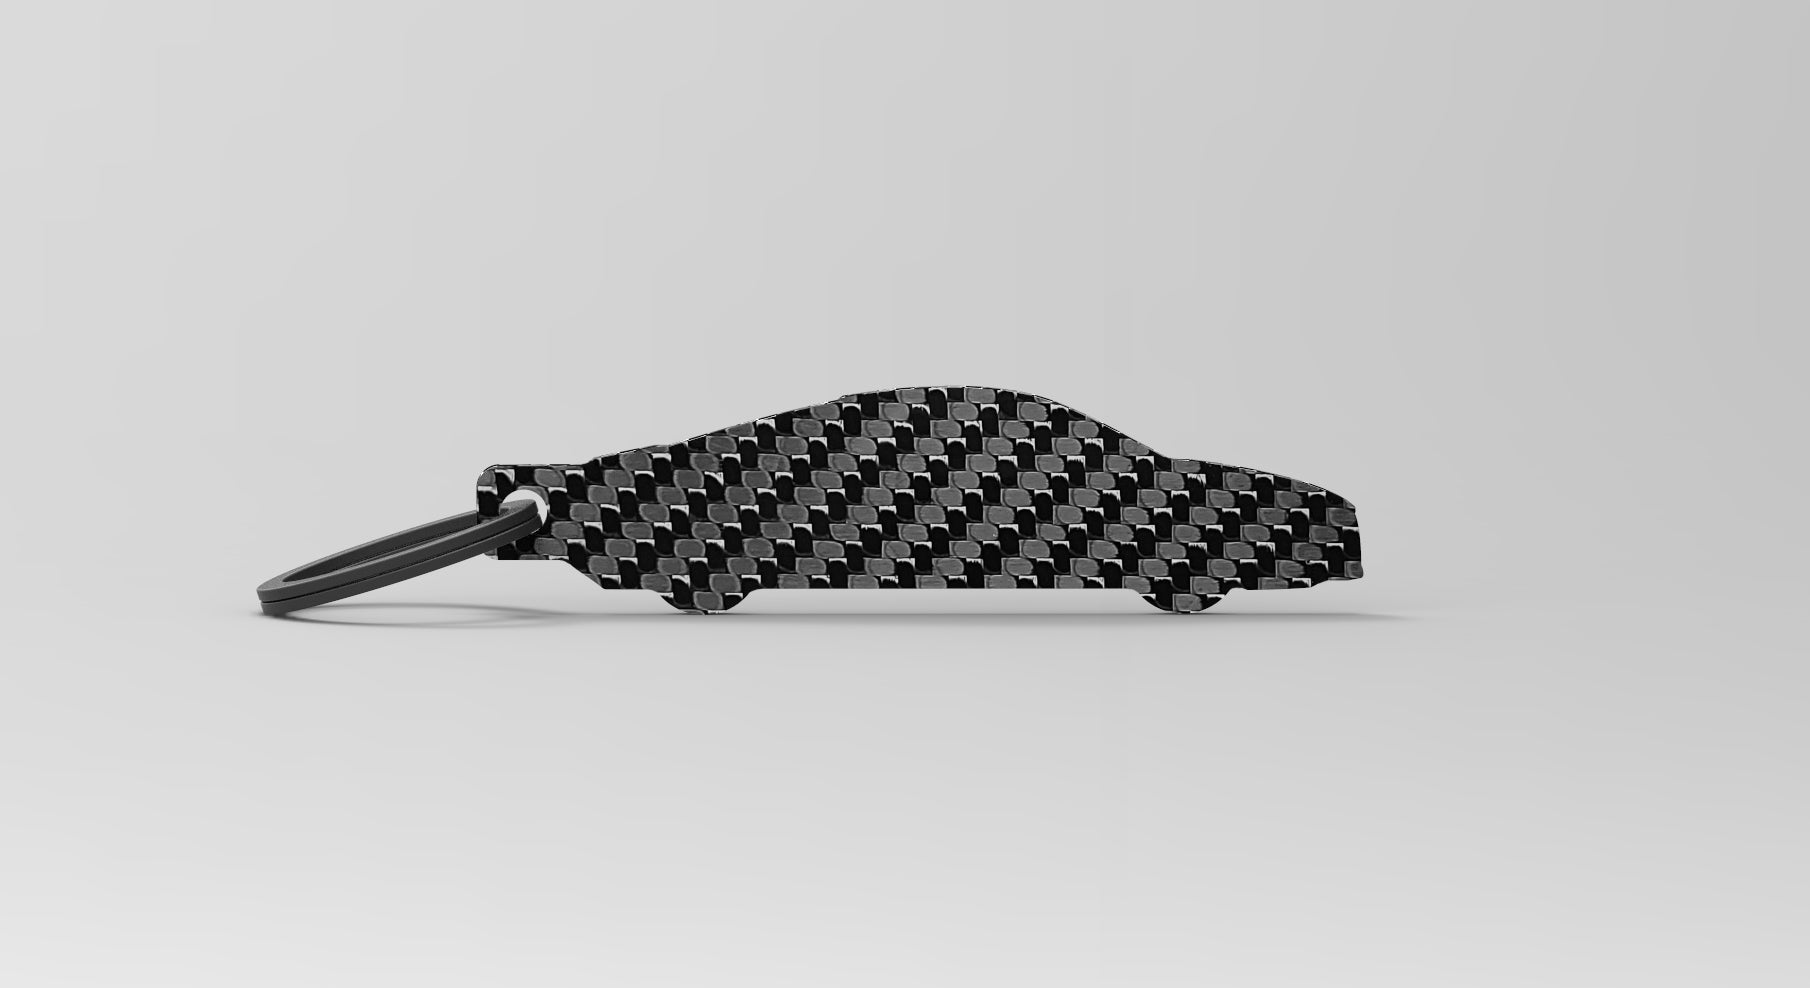 R8 (Gen 1) silhouette carbon fiber keychain